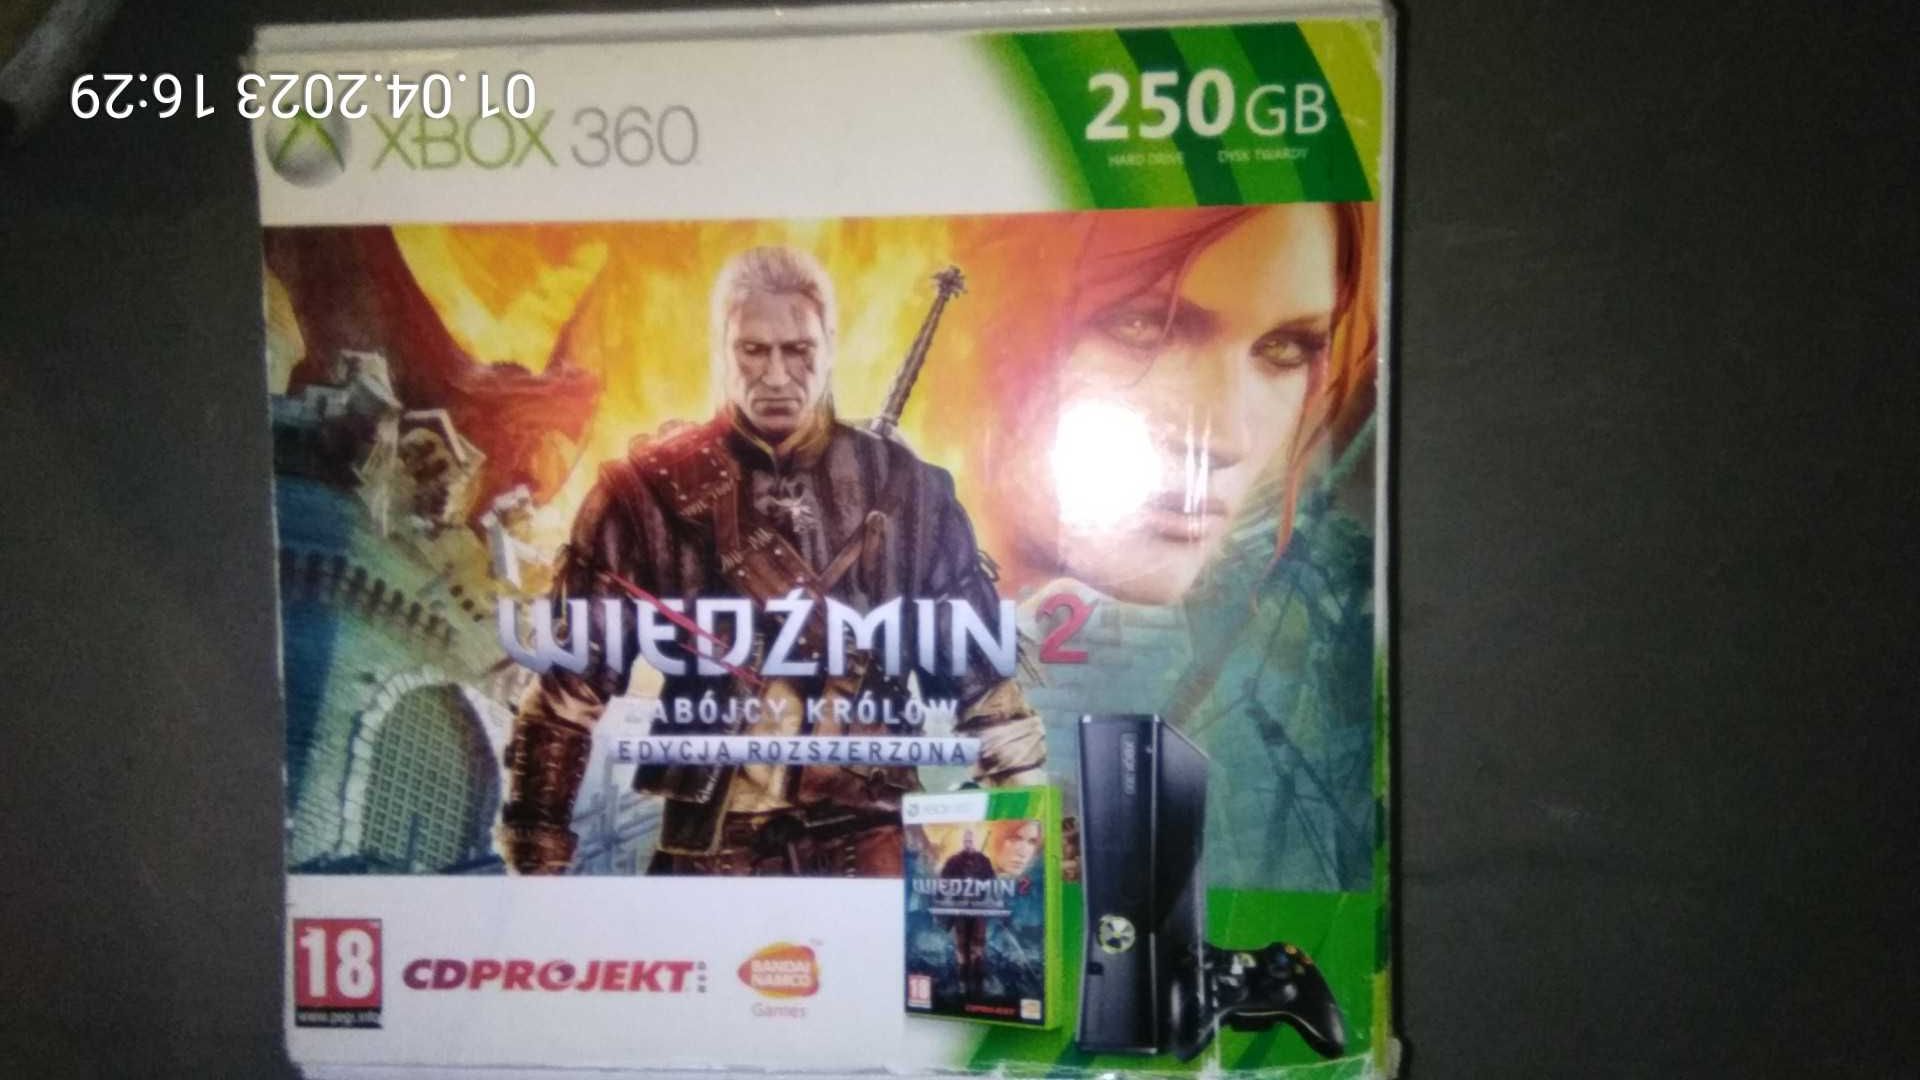 Oryginalne pudełko Xbox 360 z Wiedźminem Zabójcy królów